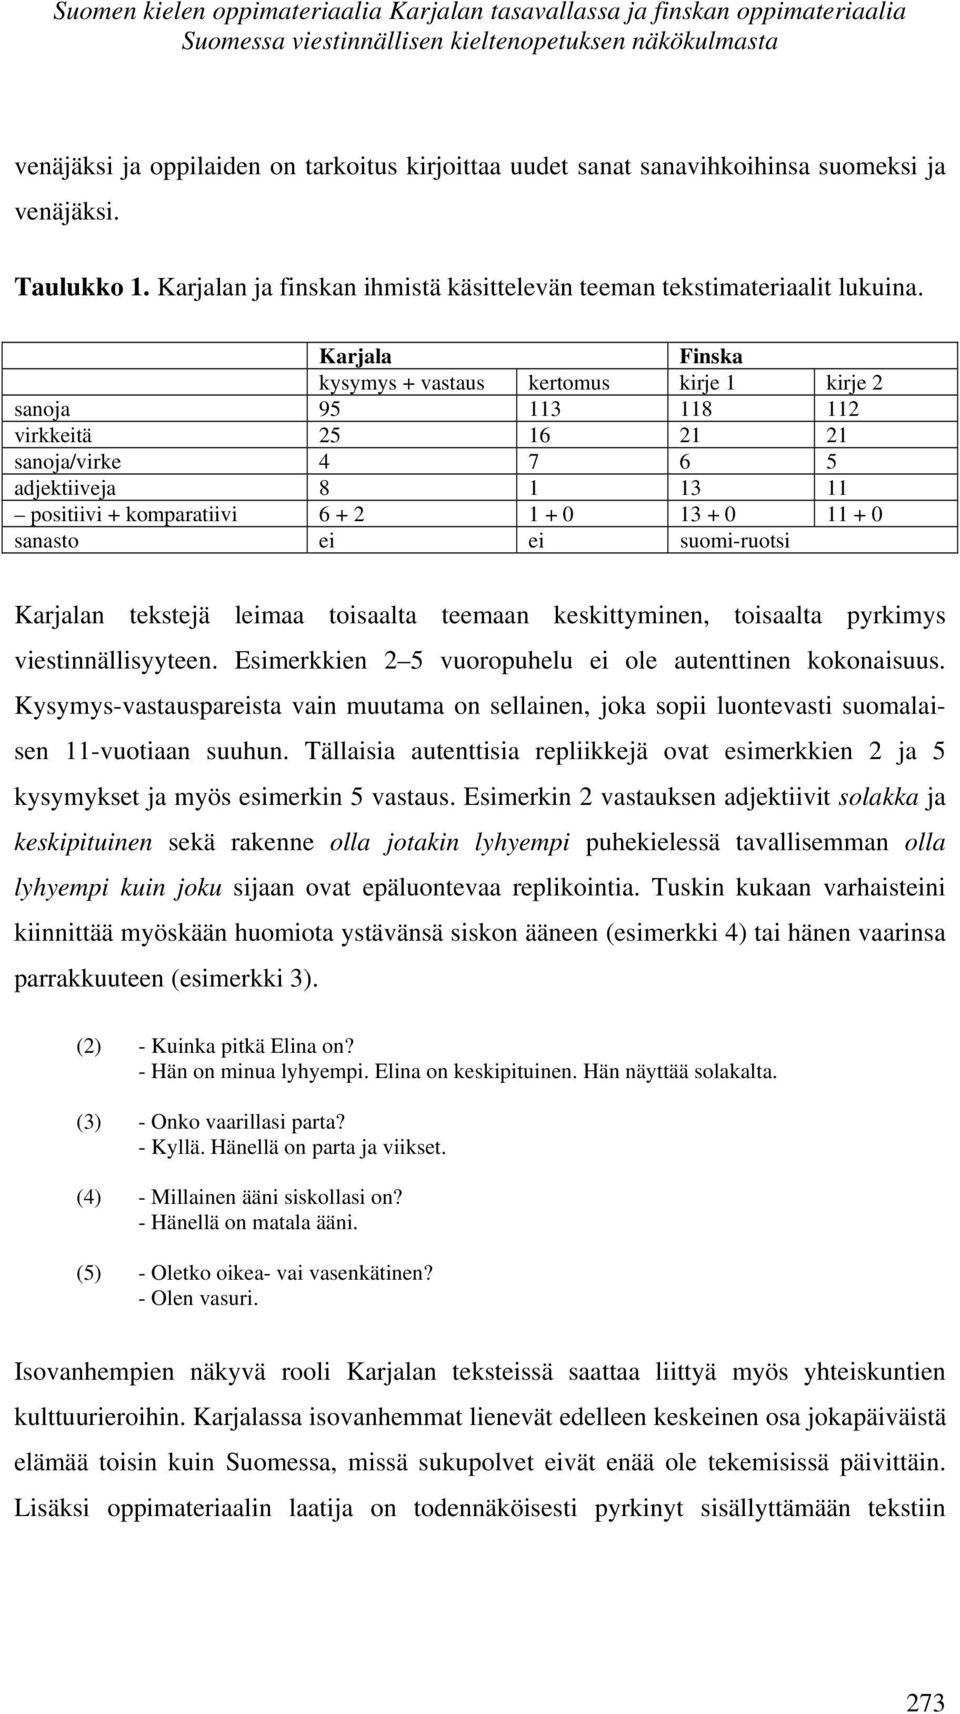 Karjala Finska kysymys + vastaus kertomus kirje 1 kirje 2 sanoja 95 113 118 112 virkkeitä 25 16 21 21 sanoja/virke 4 7 6 5 adjektiiveja 8 1 13 11 positiivi + komparatiivi 6 + 2 1 + 0 13 + 0 11 + 0